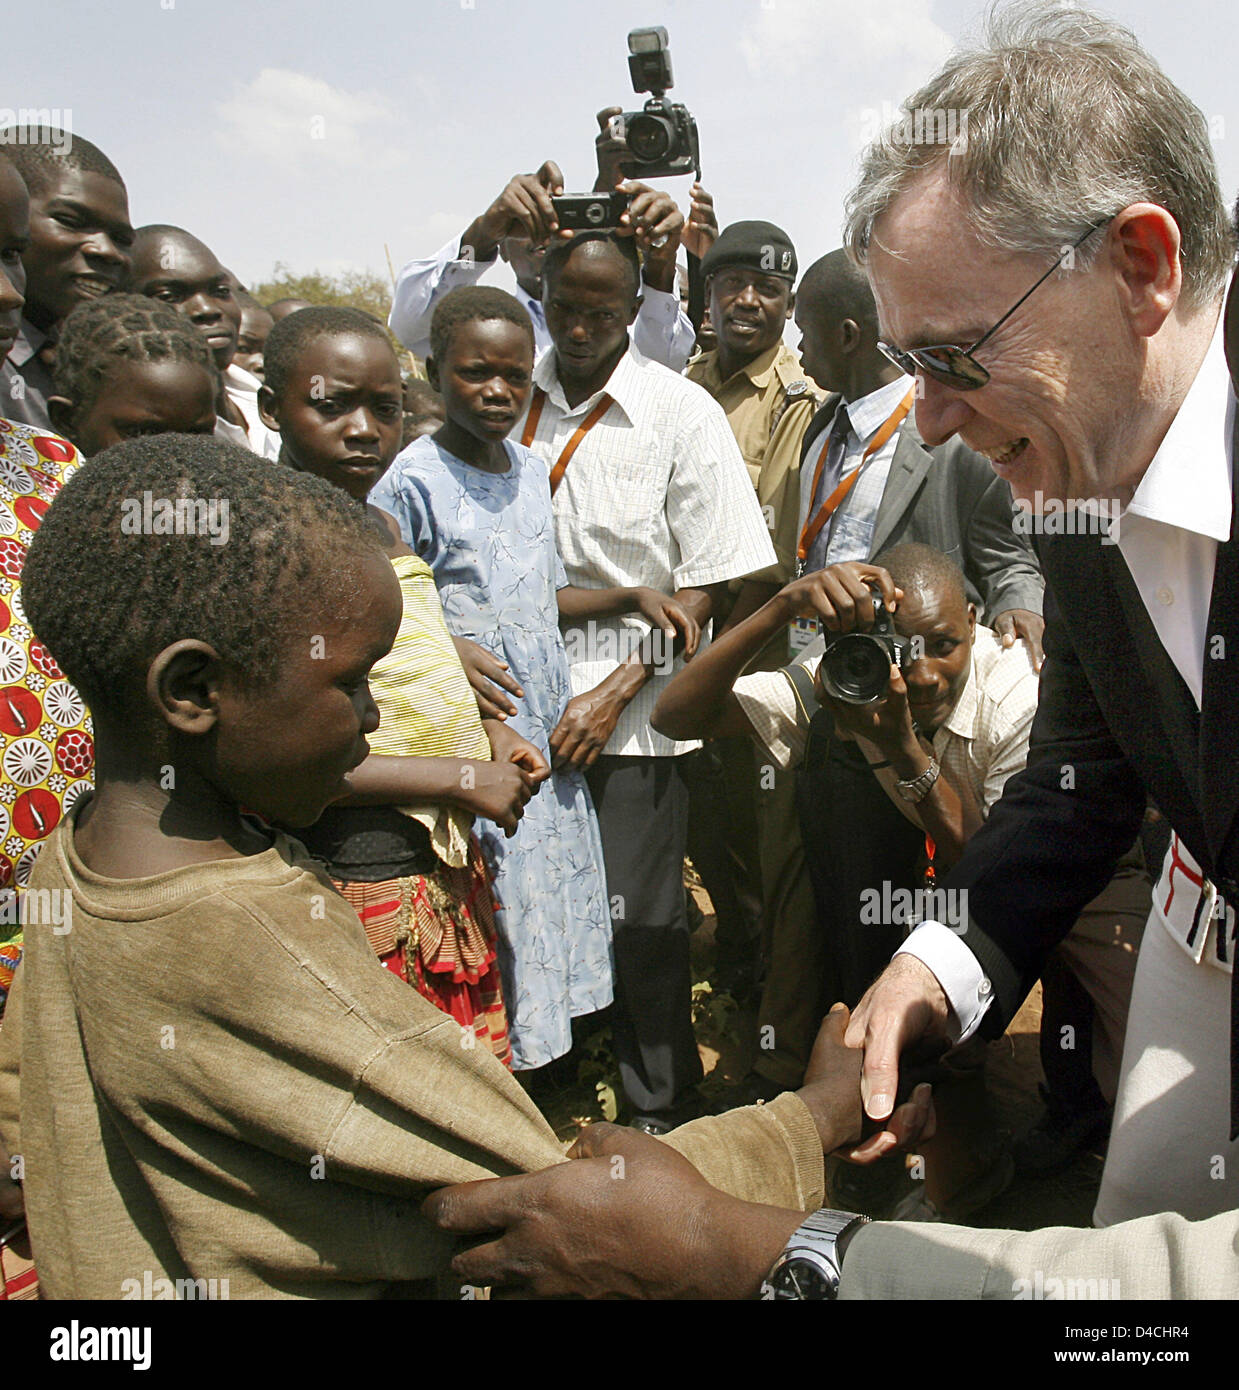 Deutschlands President Horst Koehler (R) begrüßt Kinder im Camp für innere Flüchtlinge in Gulu, Uganda, 5. Februar 2008. Herr Koehler und seine Frau Eva Koehler sind auf einem dreitägigen Besuch in Uganda und wird dann weiter nach Ruanda. Foto: WOLFGANG KUMM Stockfoto